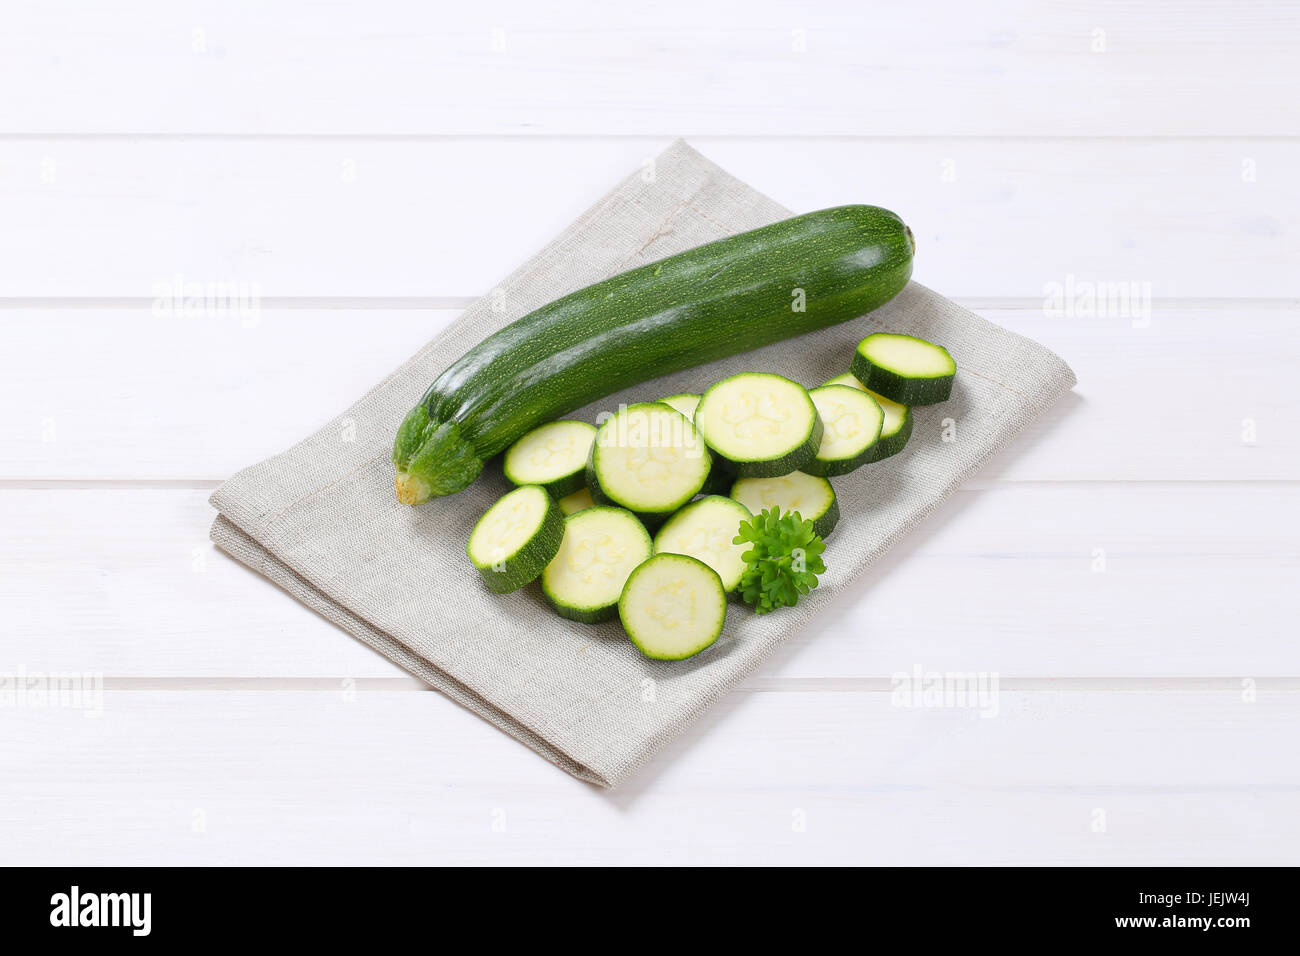 Intero e fette di zucchine verde sul posto beige mat Foto Stock